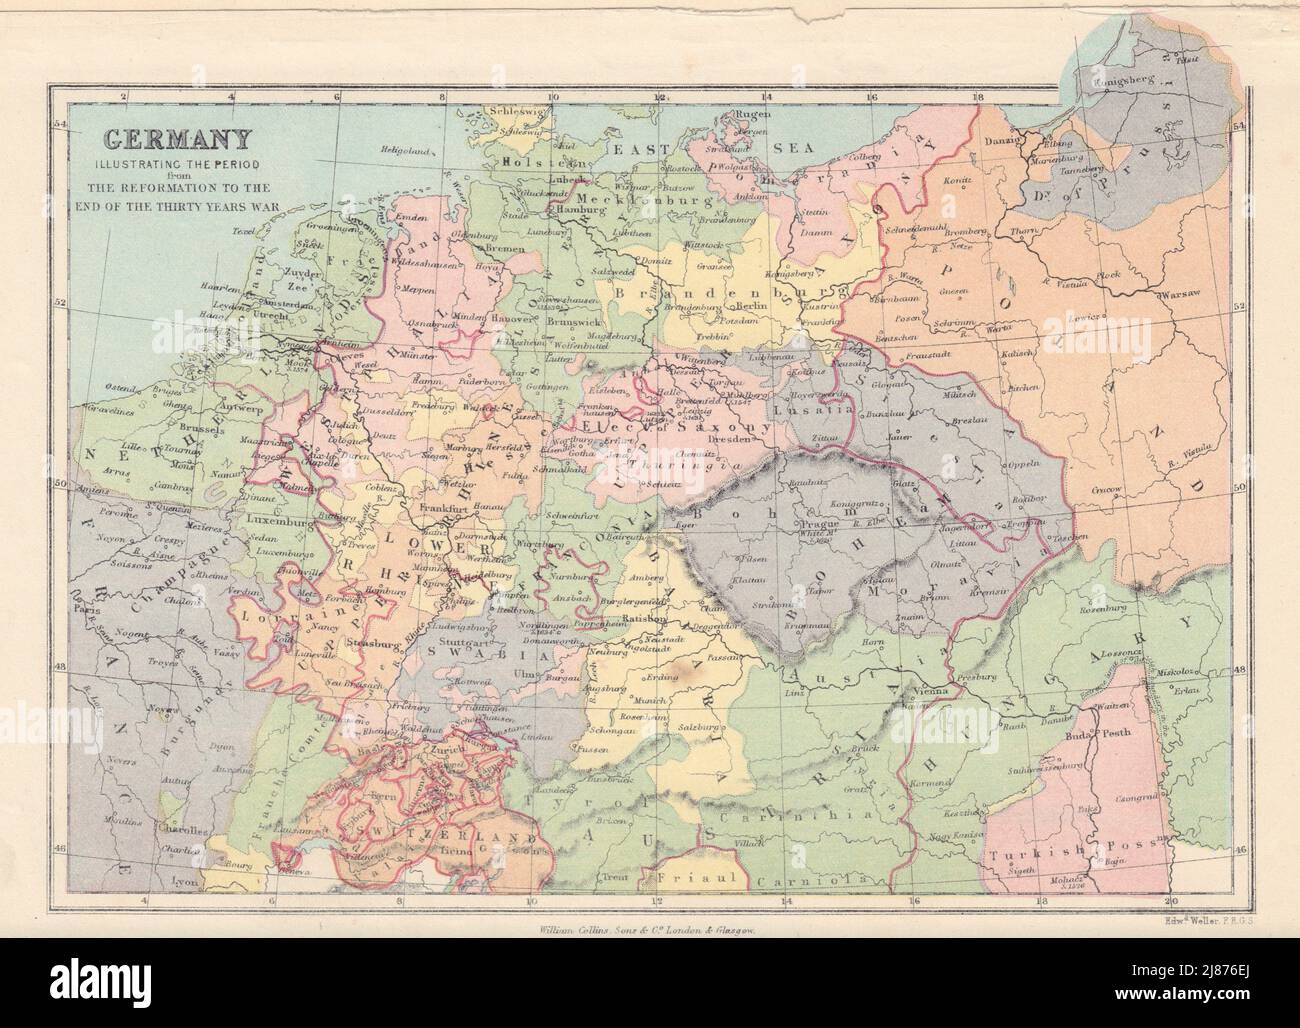 DEUTSCHLAND von der Reformation bis zum Ende des 30-jährigen Krieges. COLLINS 1873-Karte Stockfoto